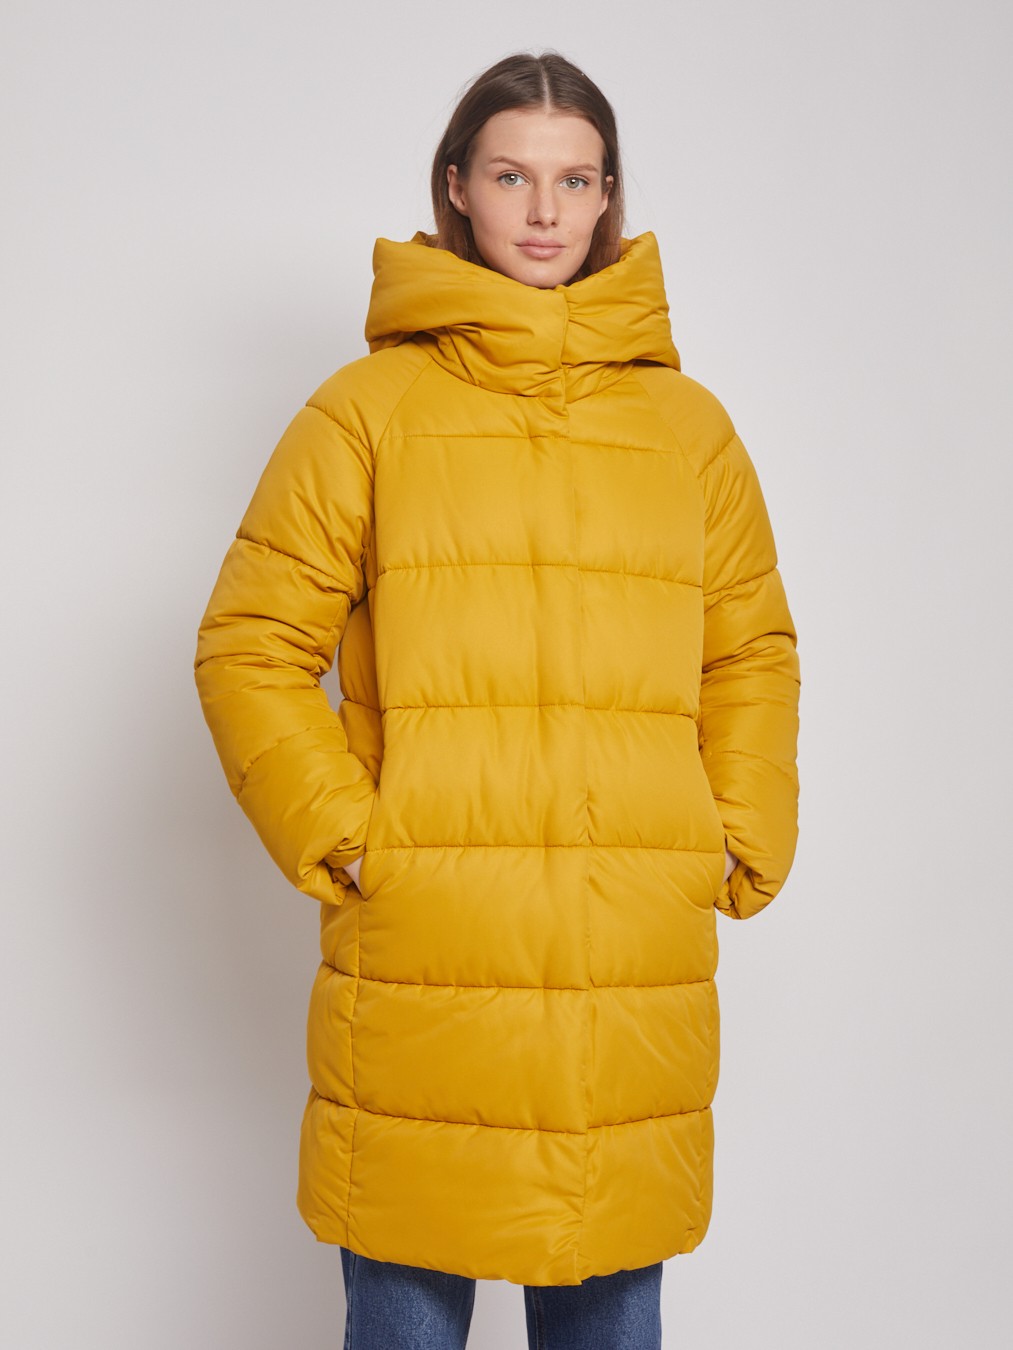 Пальто женское Zolla 022345202104 желтое L